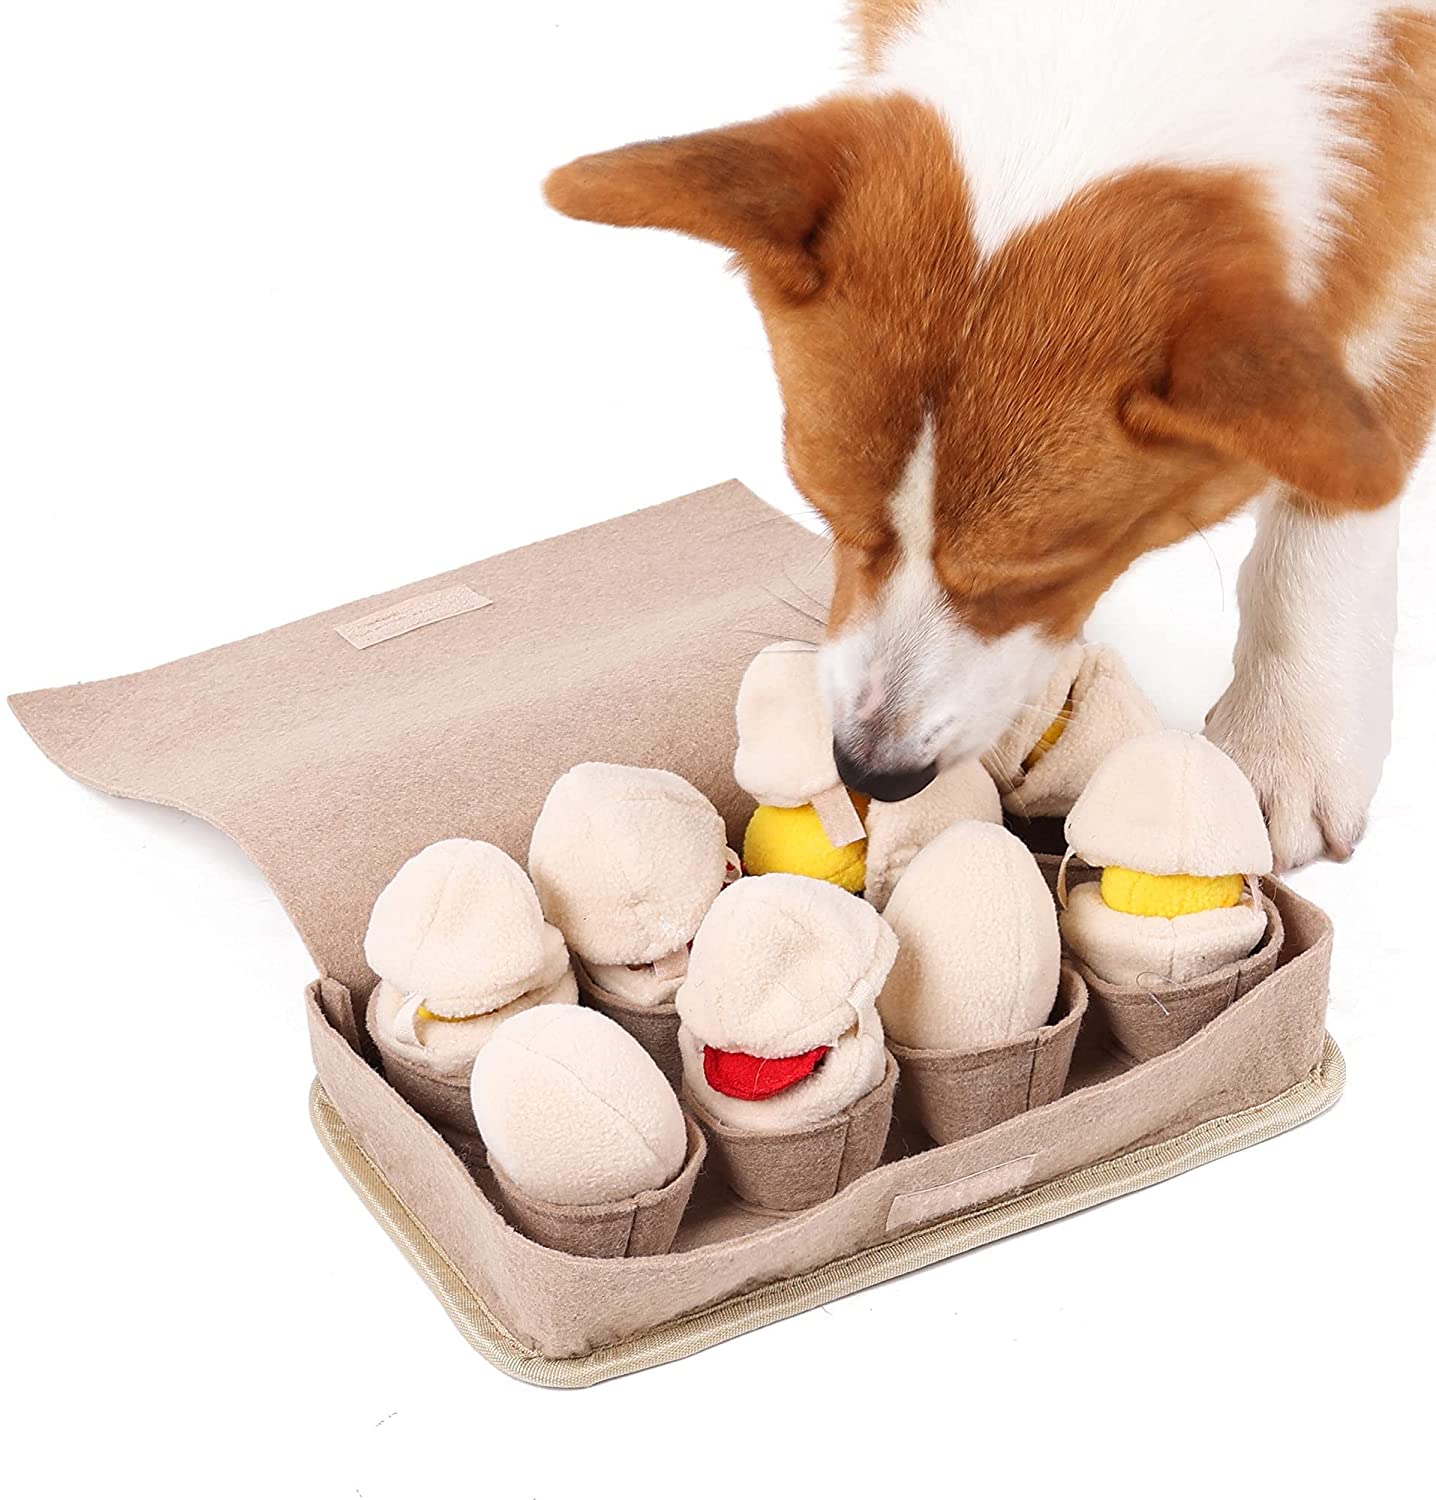 Egg Carton Interactive Nosework Dog Toy